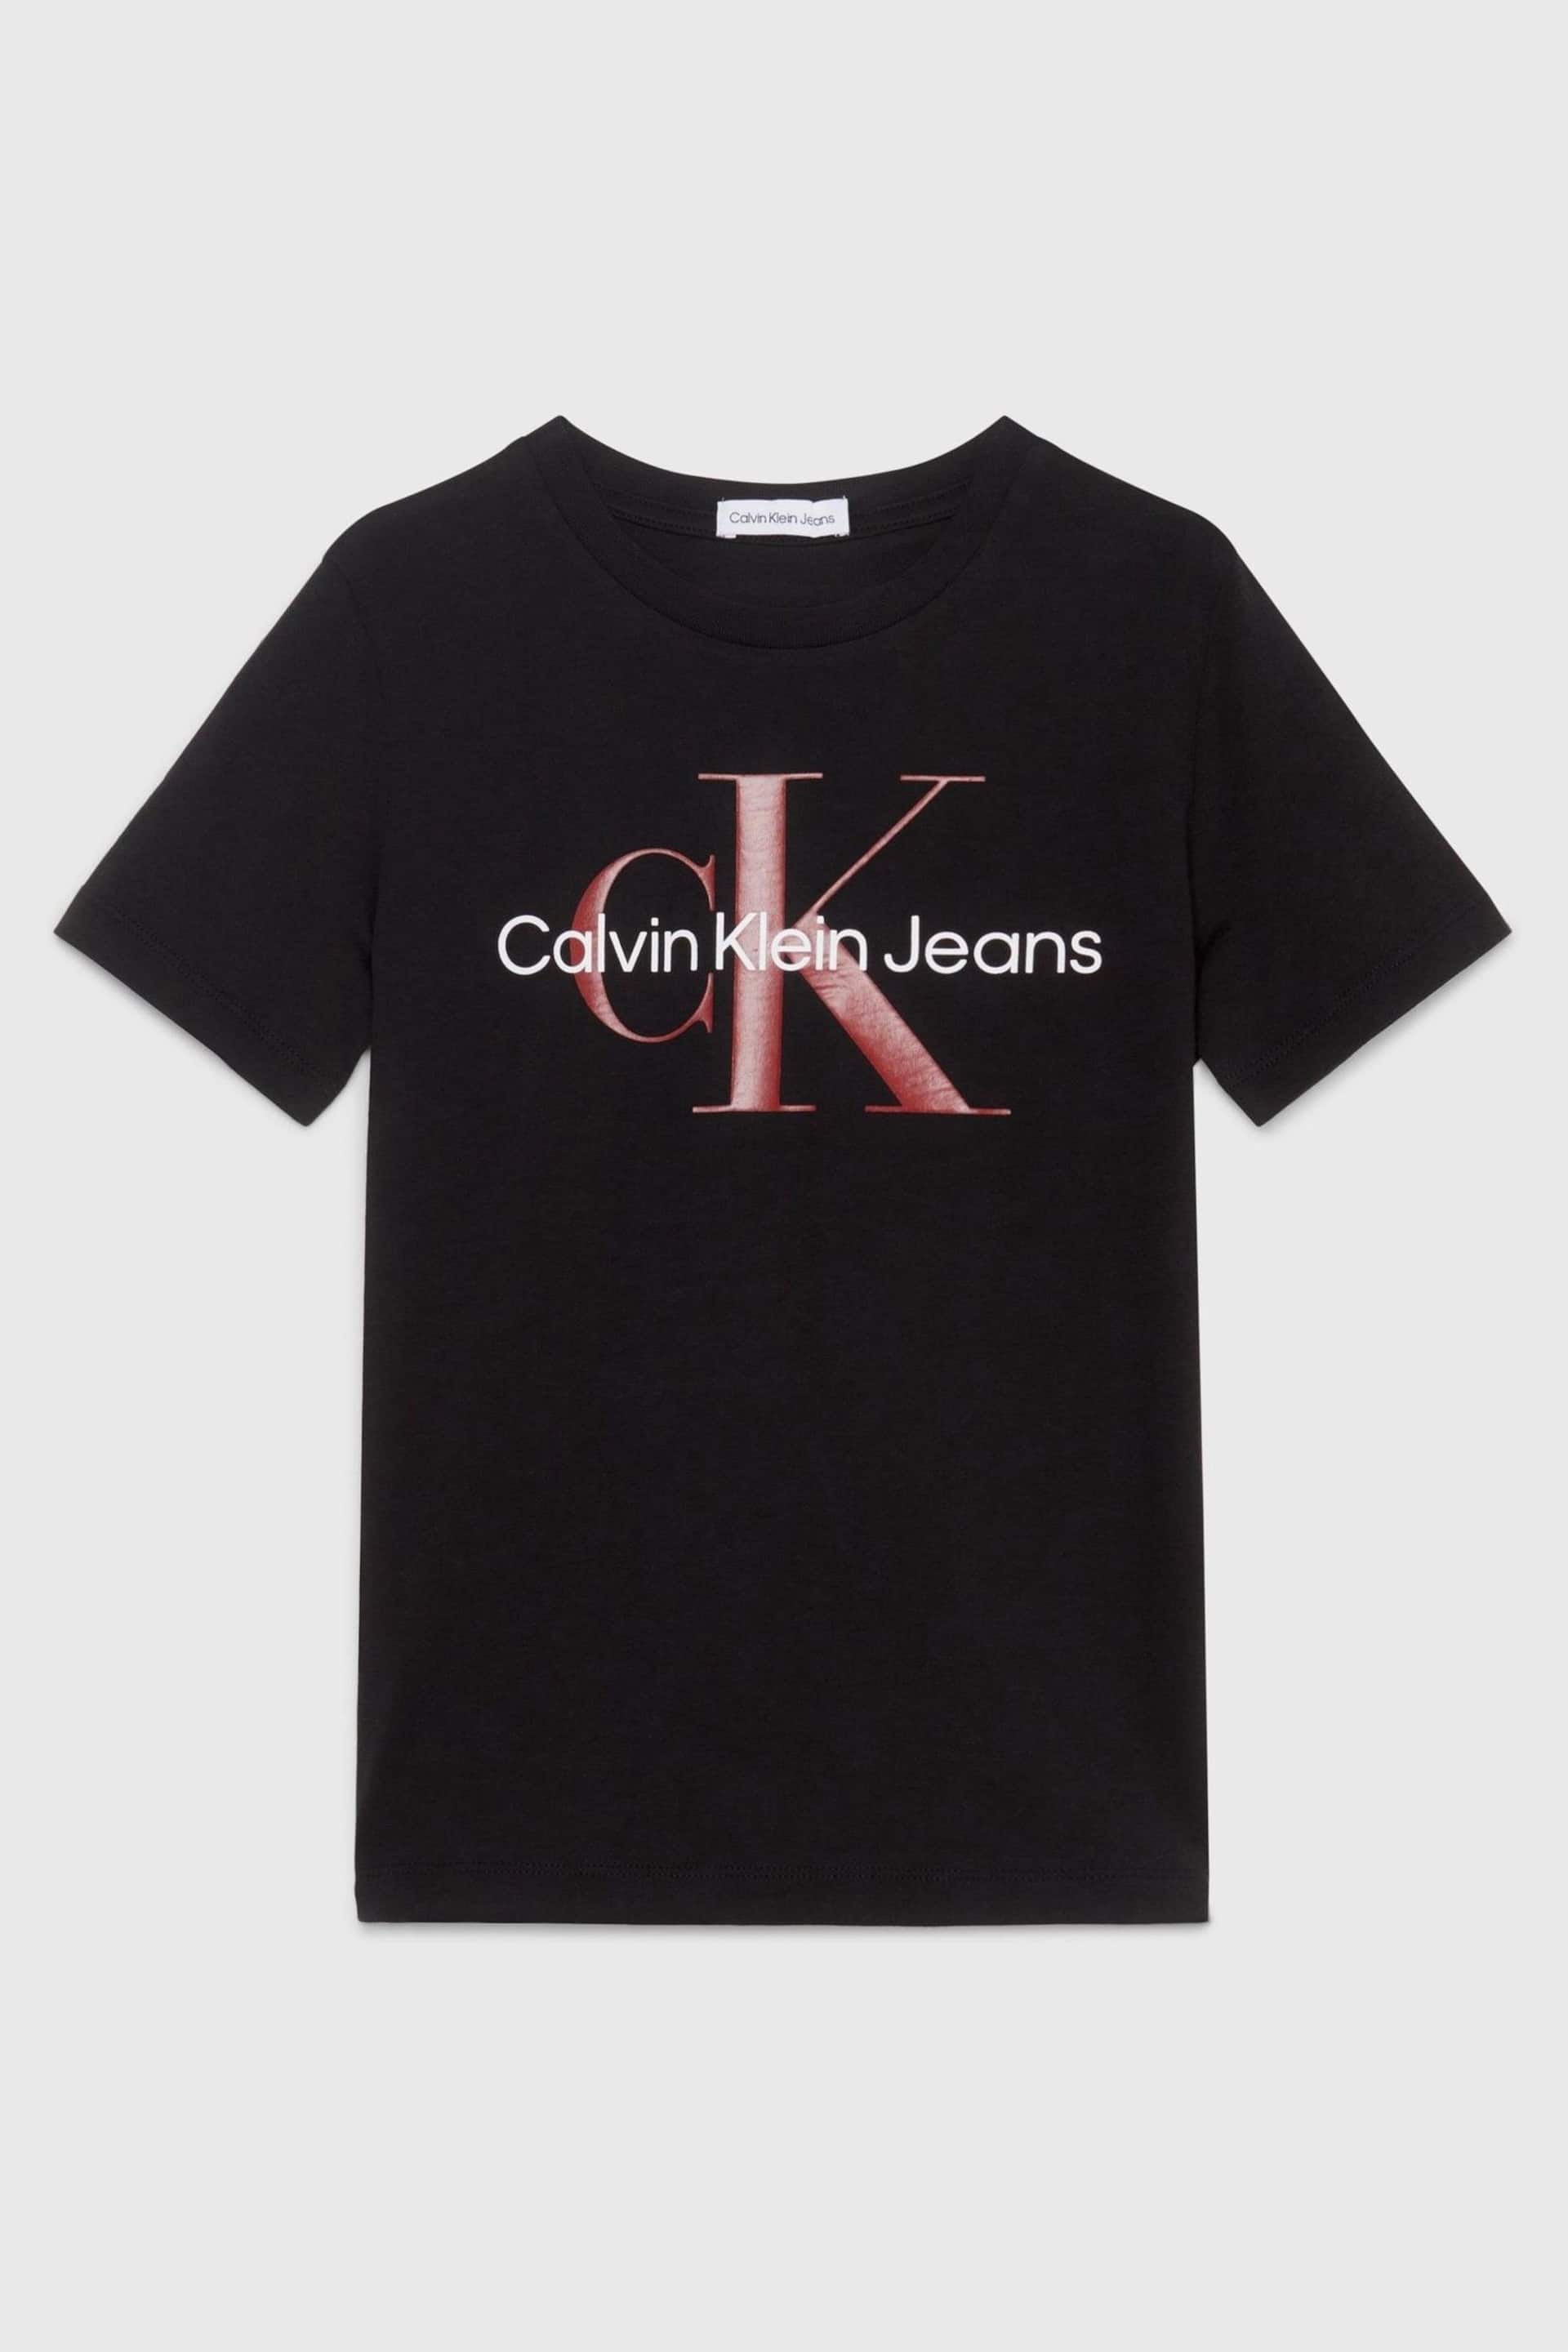 Calvin Klein Black Monogram T-Shirt - Image 4 of 4